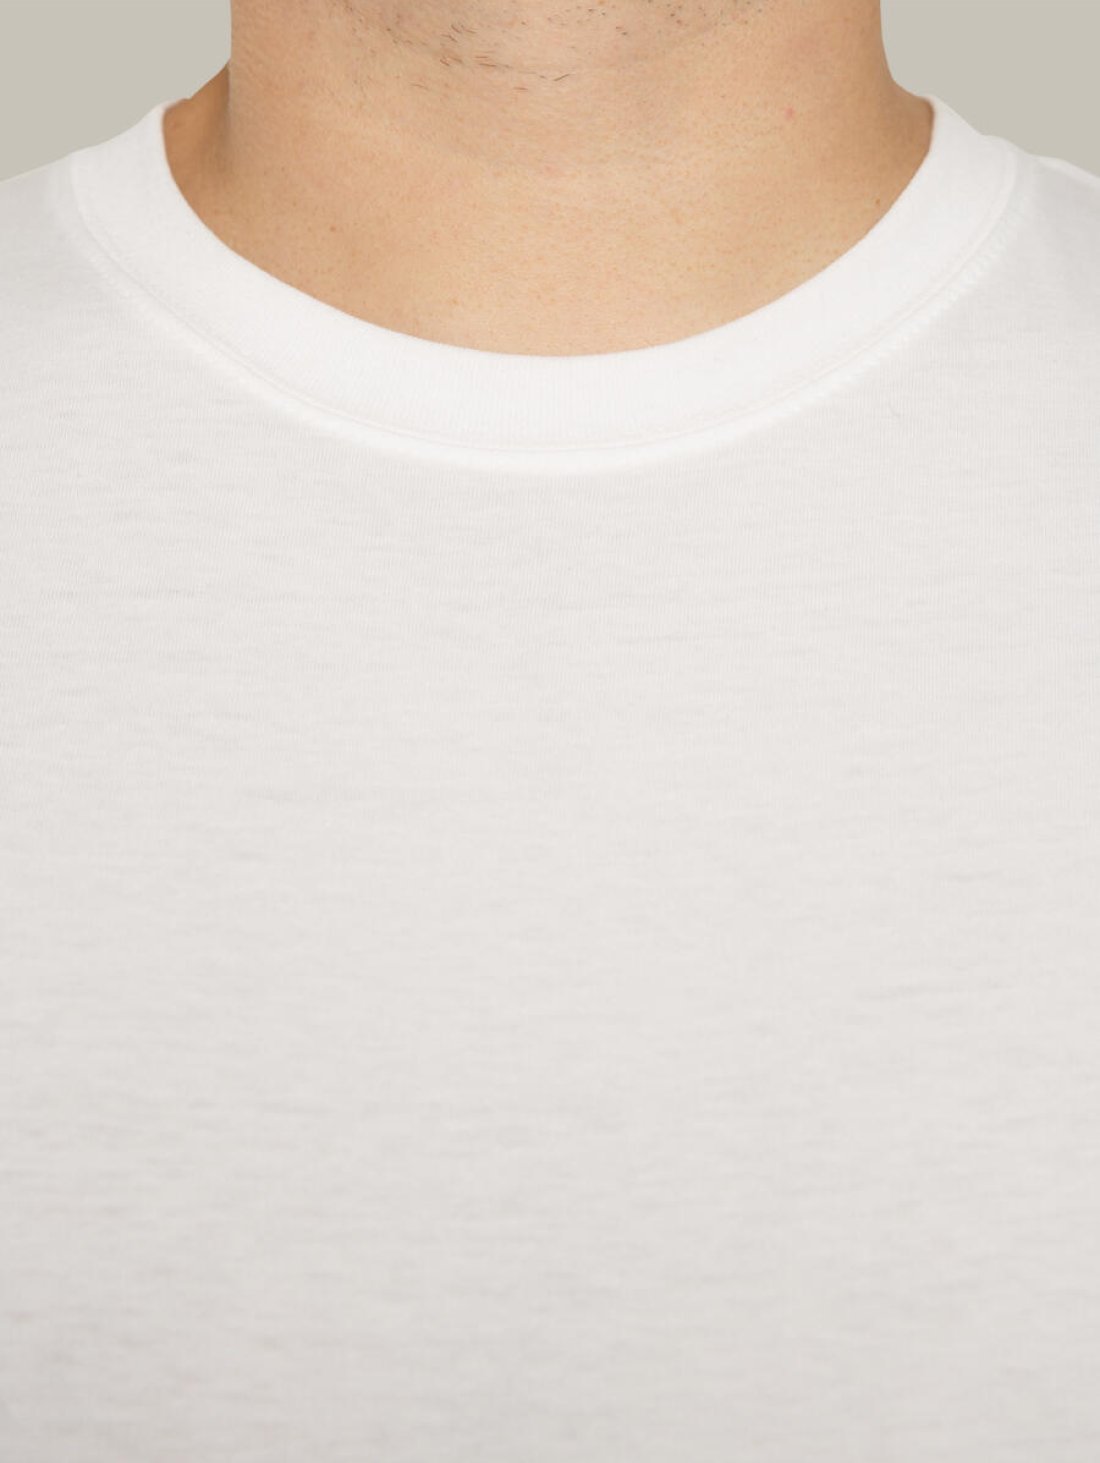 Чоловіча футболка, біла з принтом аватара Hopper 055